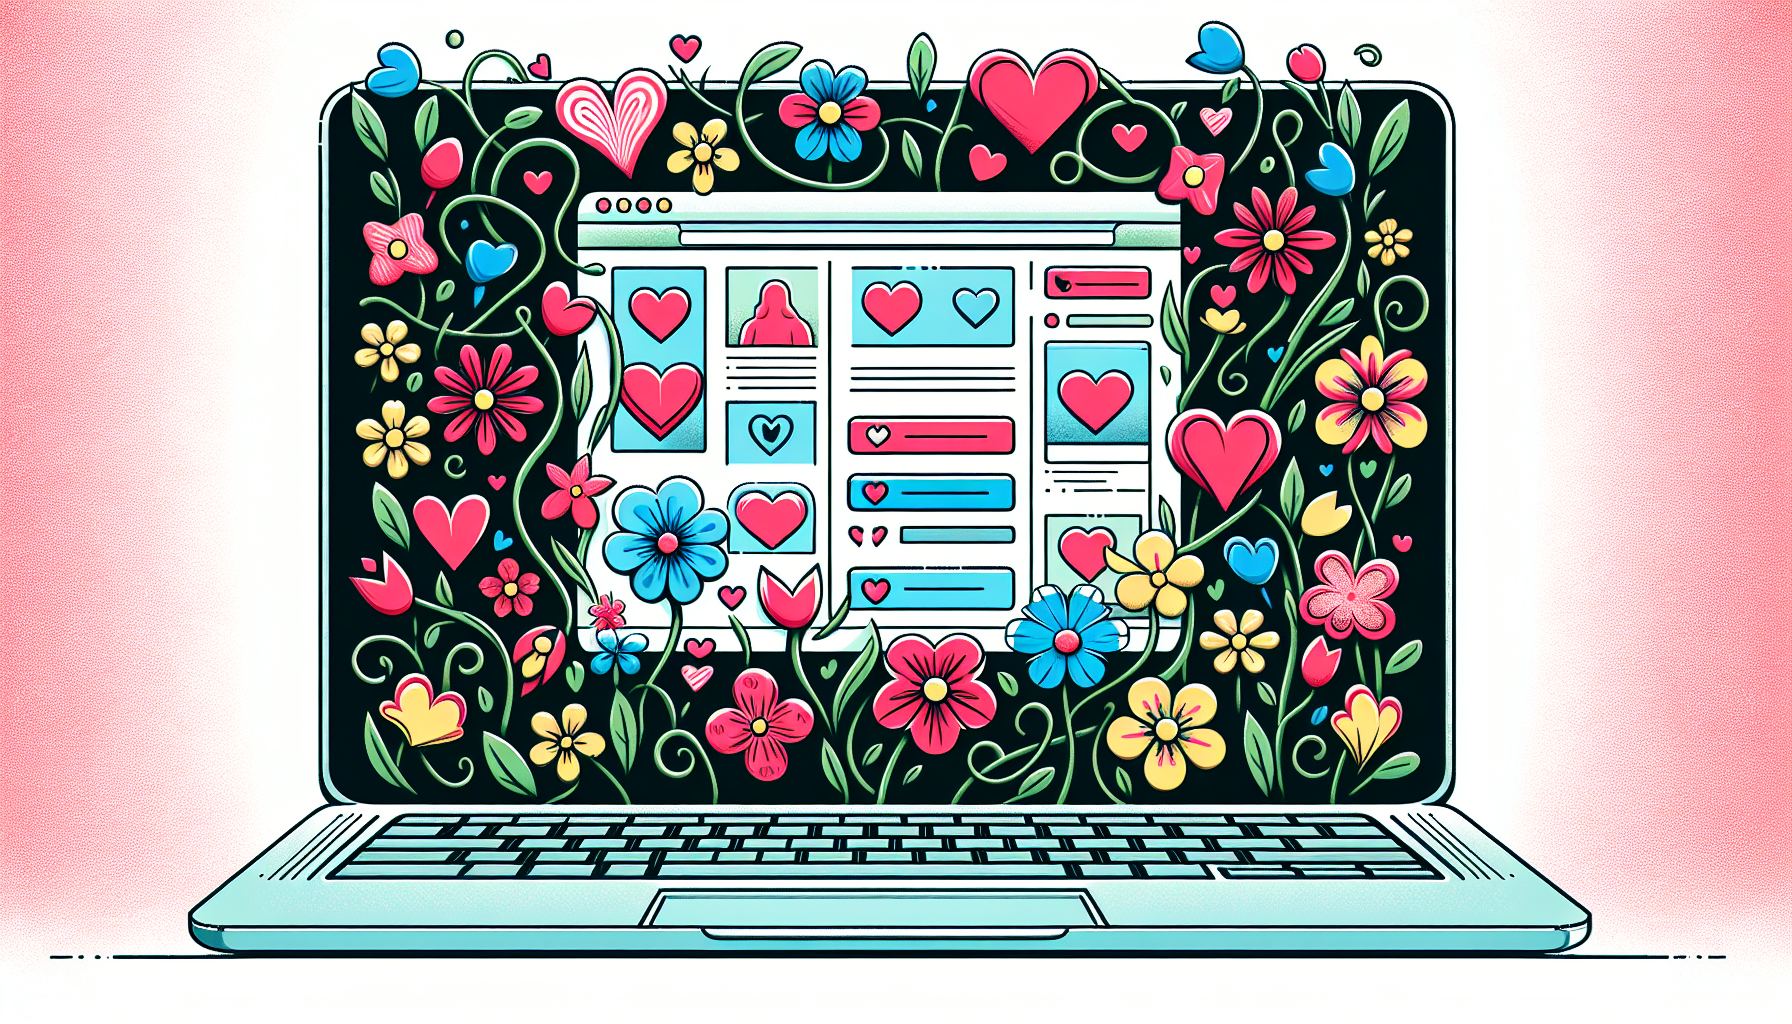 FrÃ¼hlingsblumen und Herzformen auf einem Laptopbildschirm